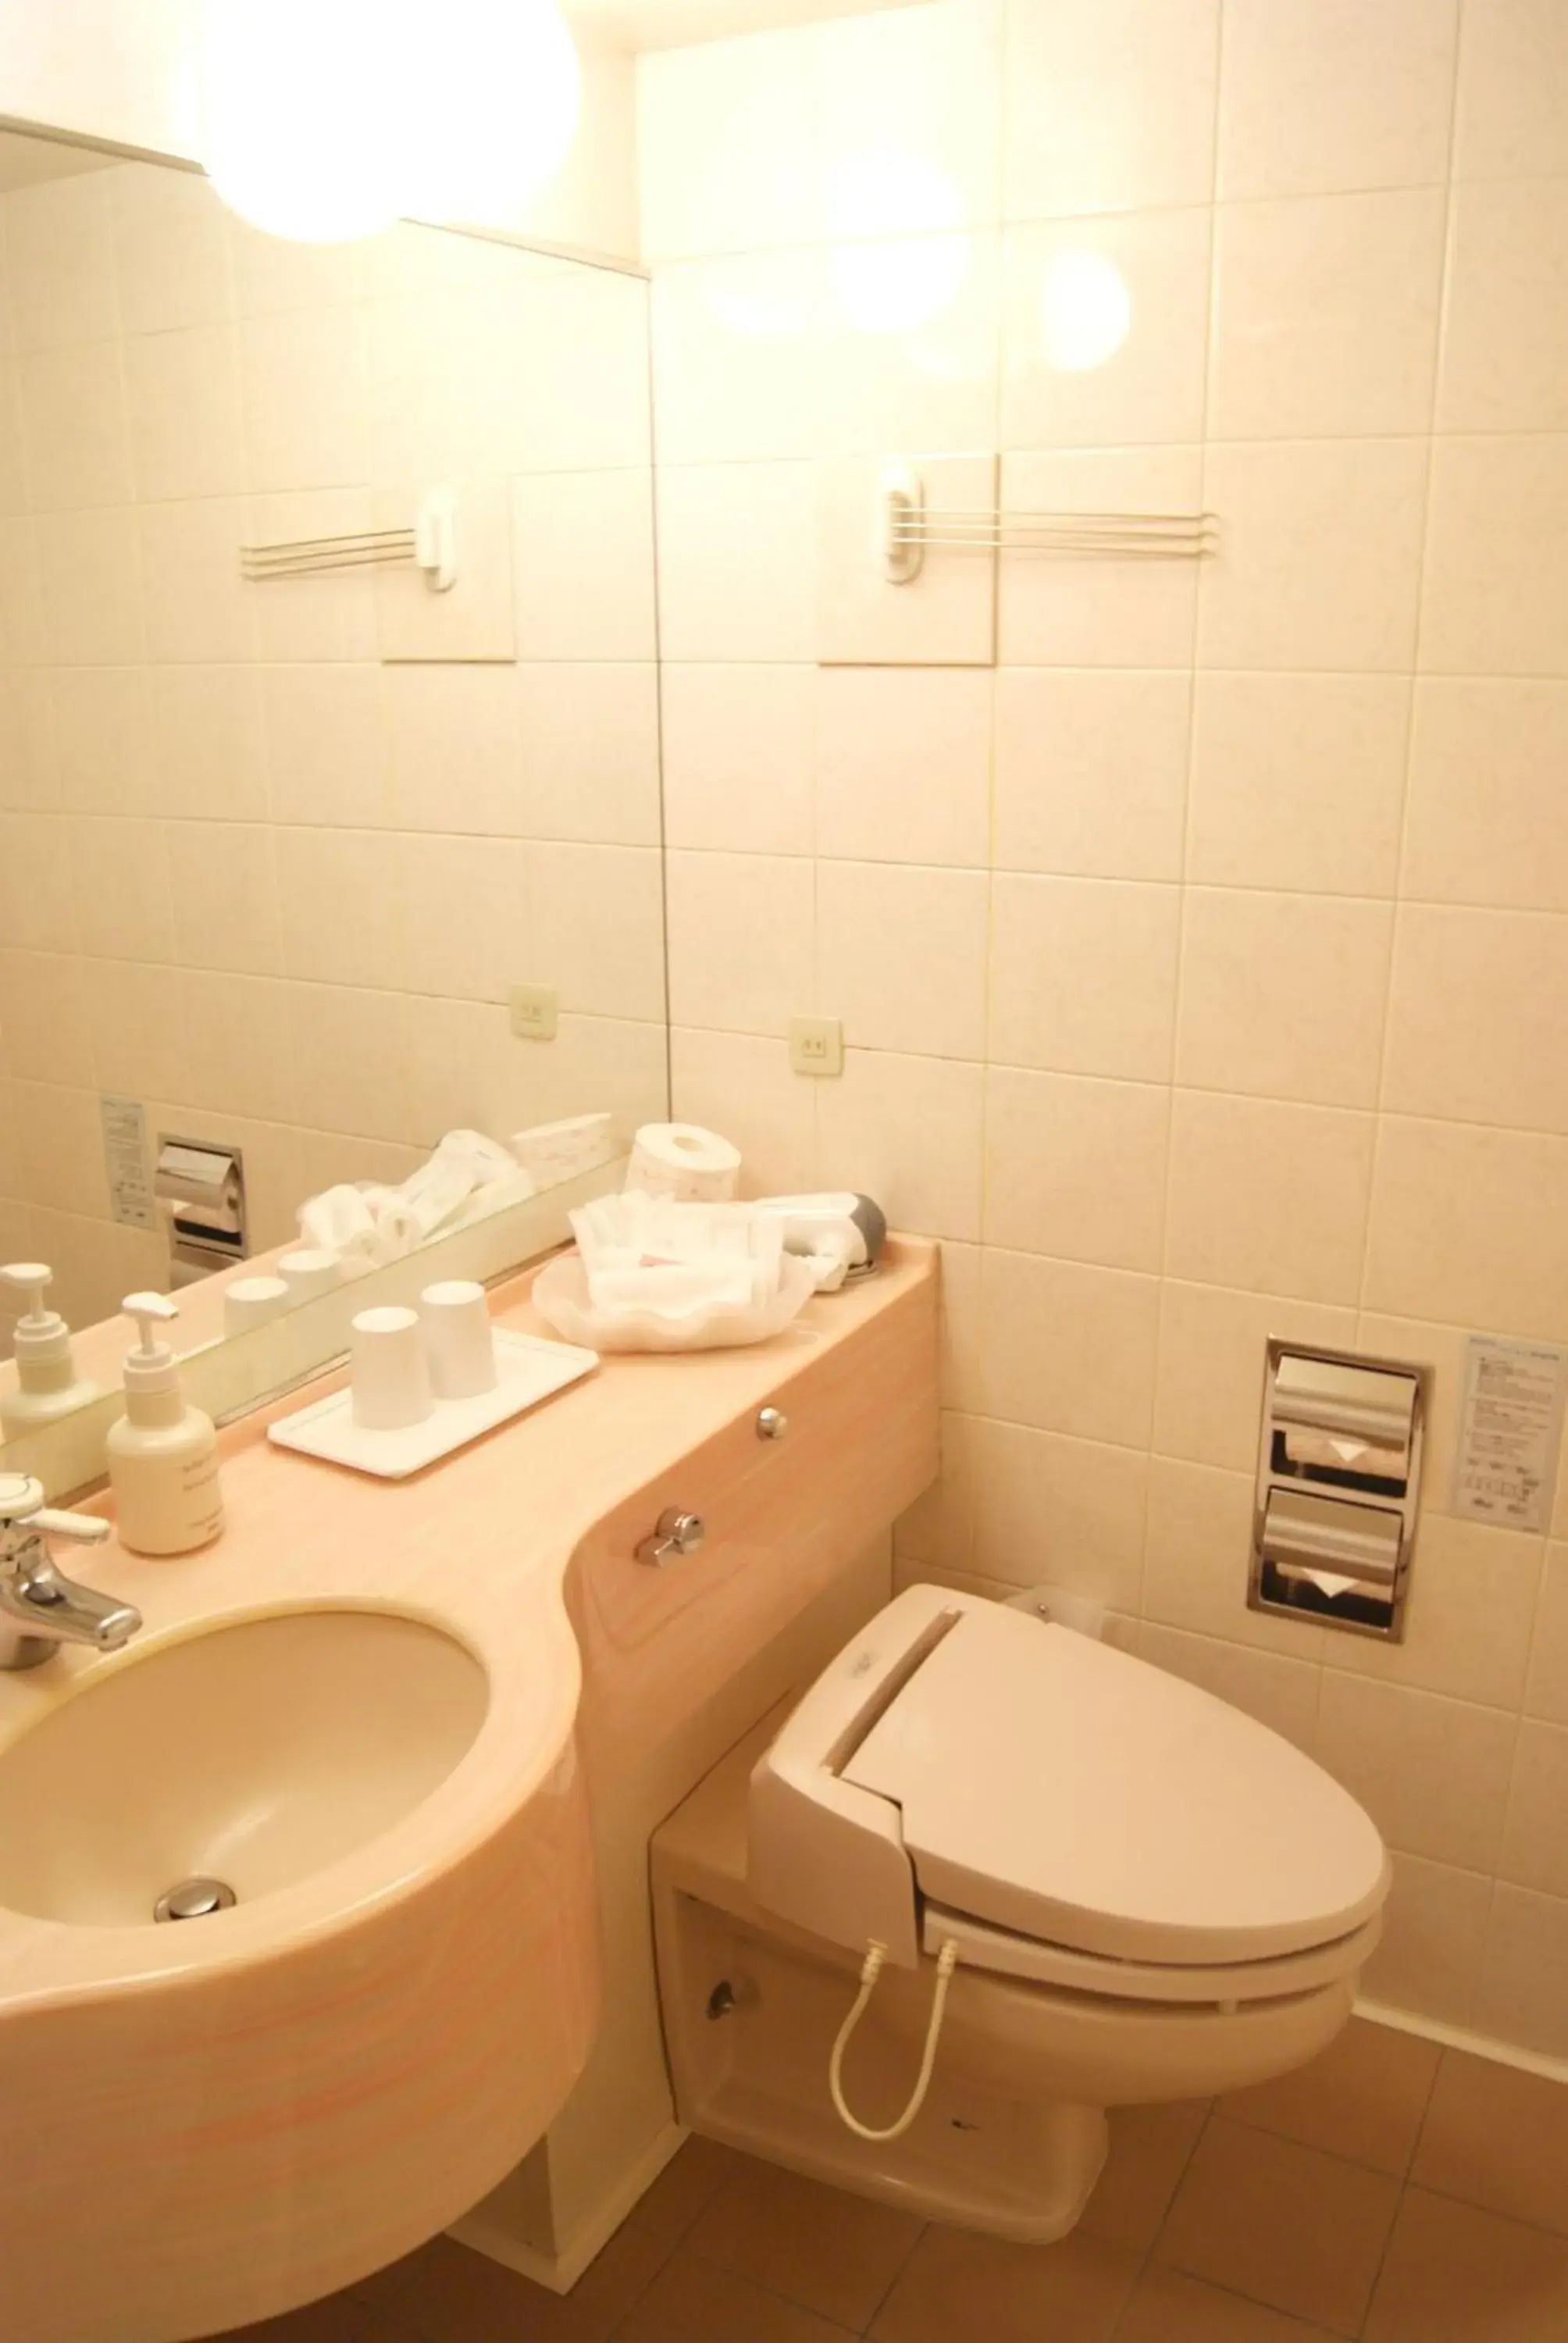 Bathroom in Kobe Sannomiya Union Hotel